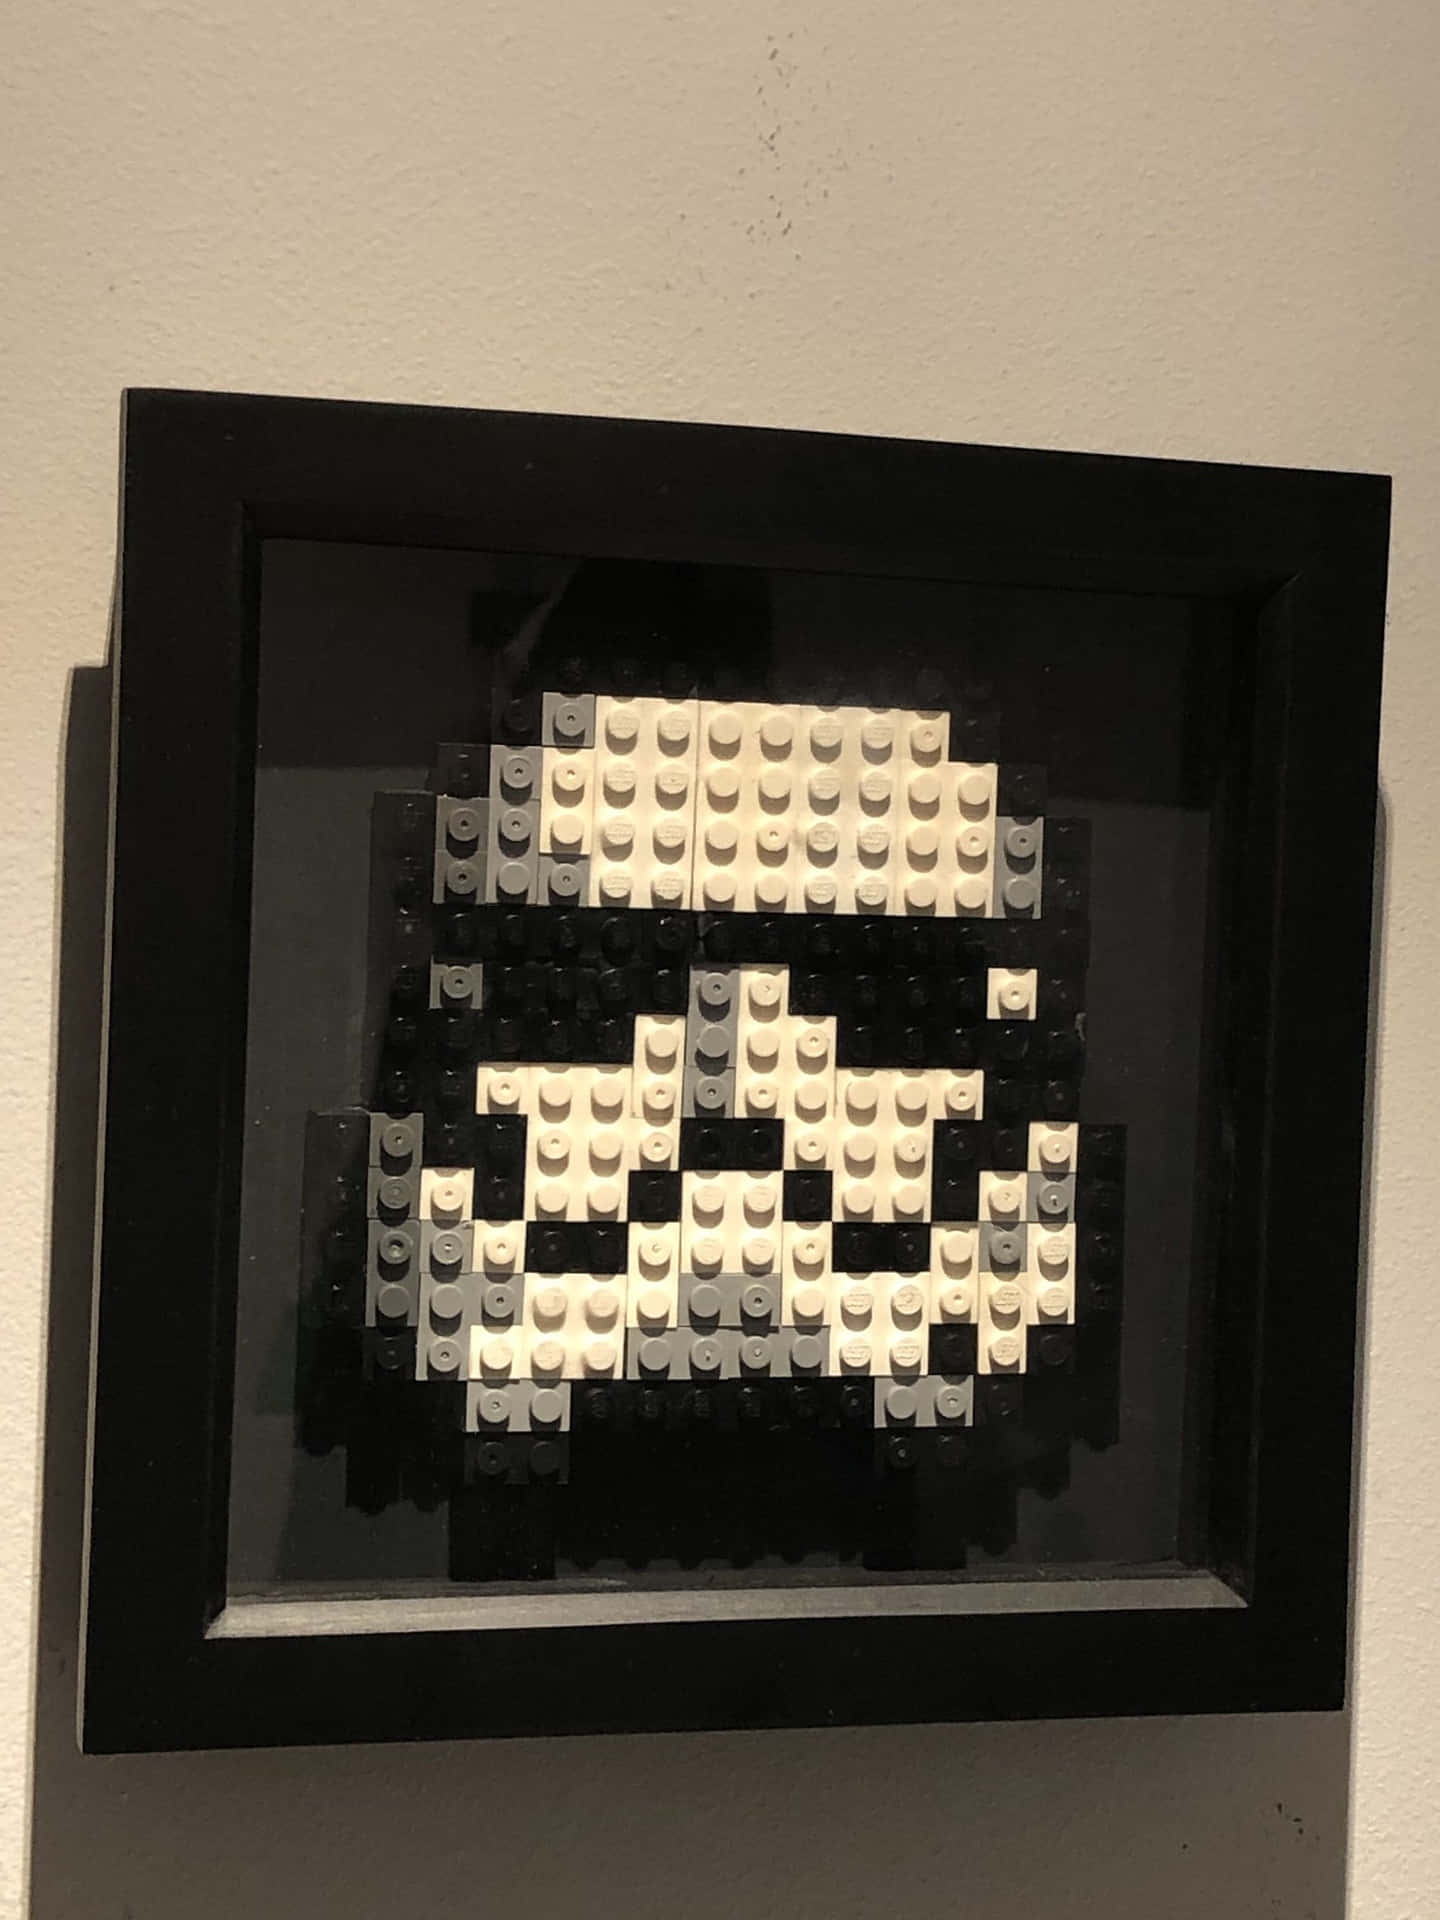 Unsoldato Di Lego Stormtrooper È Incorniciato In Una Cornice Nera